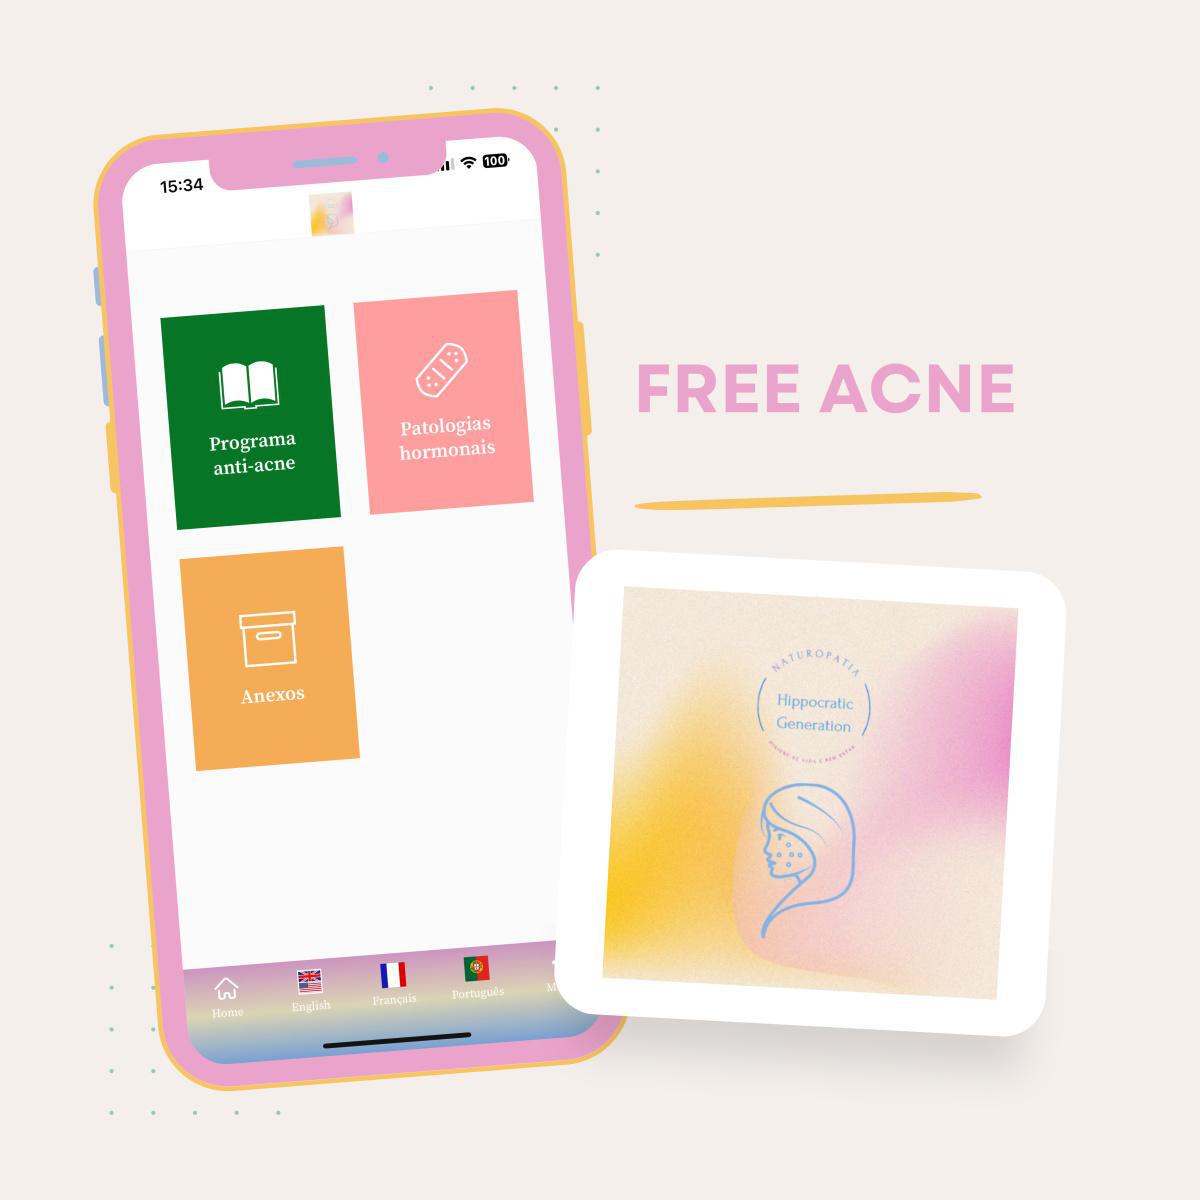 FREE ACNE - Cure a sua acne de forma natural